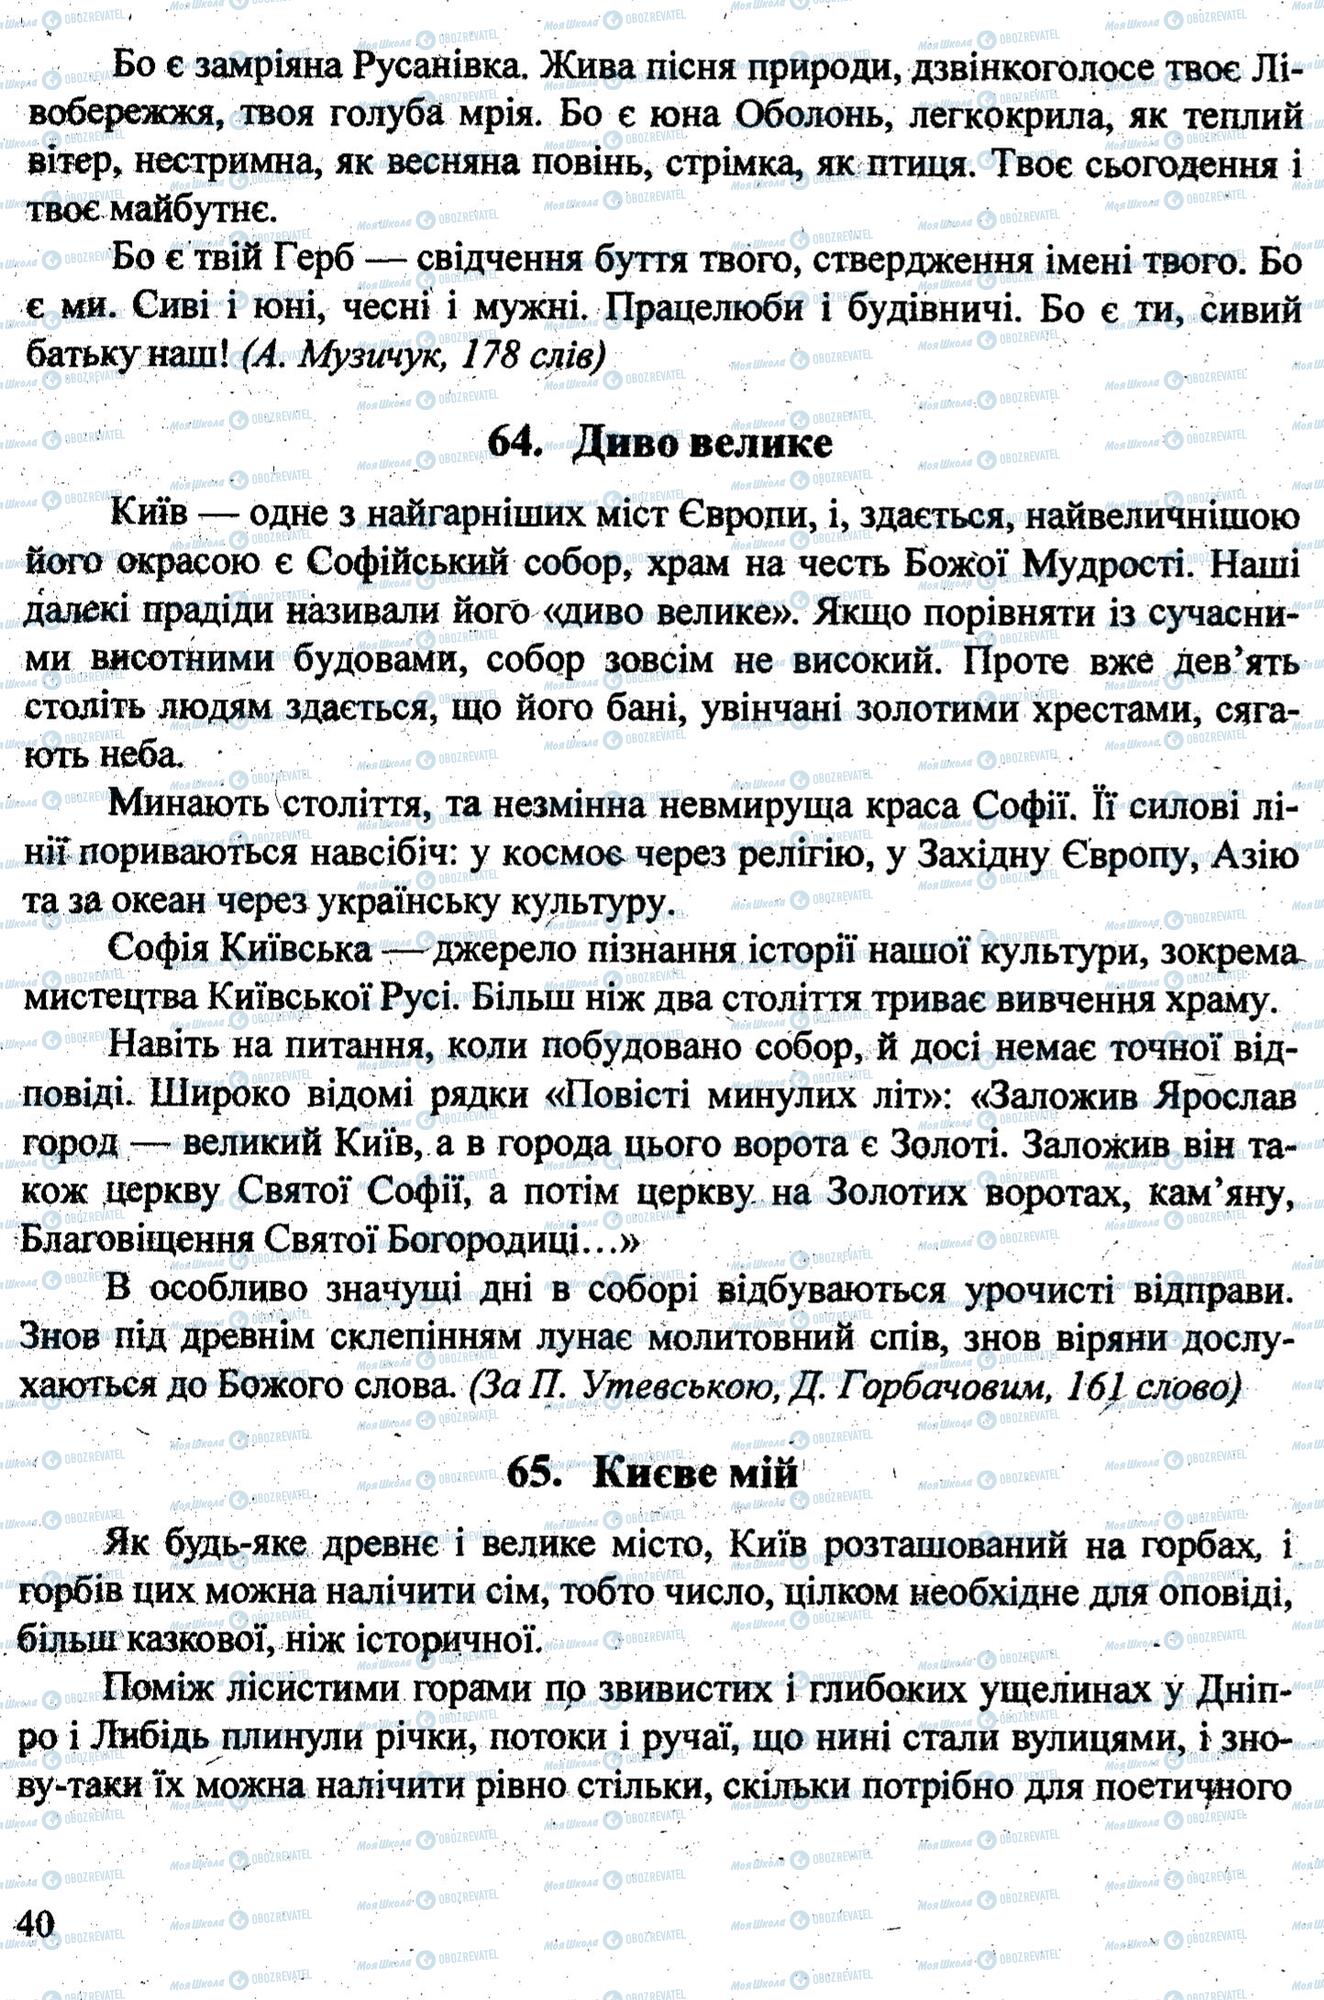 ДПА Укр мова 9 класс страница 0039